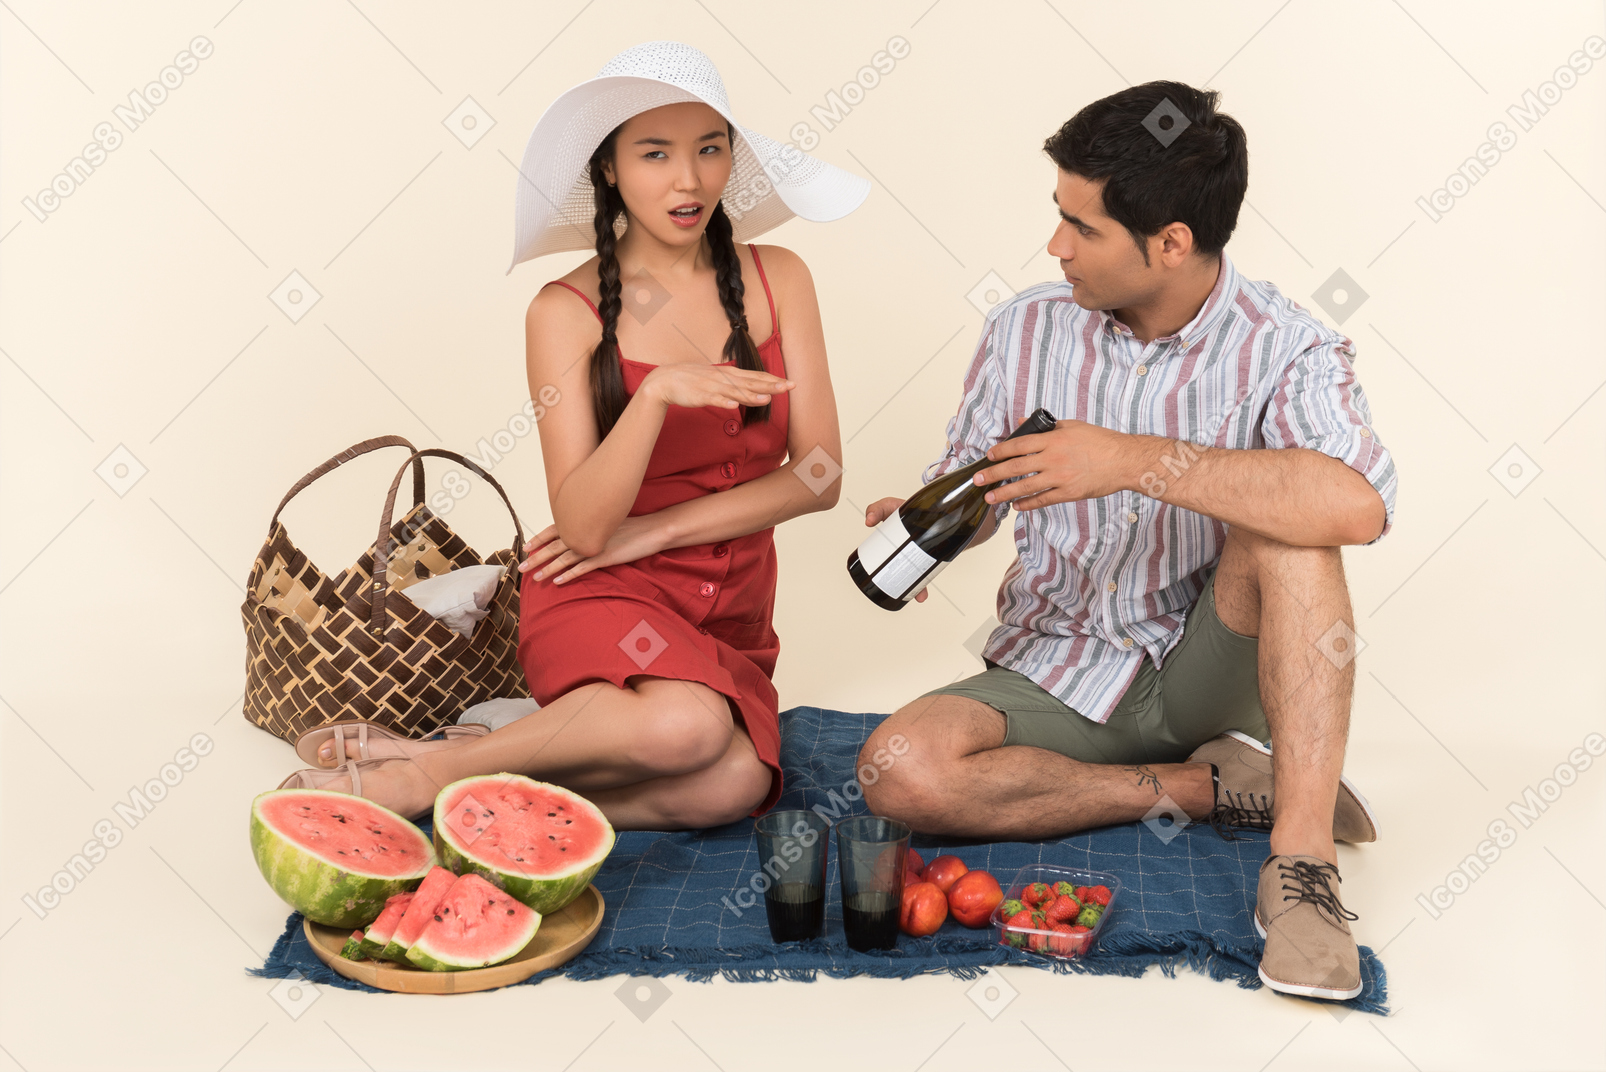 怒っているように見える女性にピクニックにワインのボトルを示す若い男